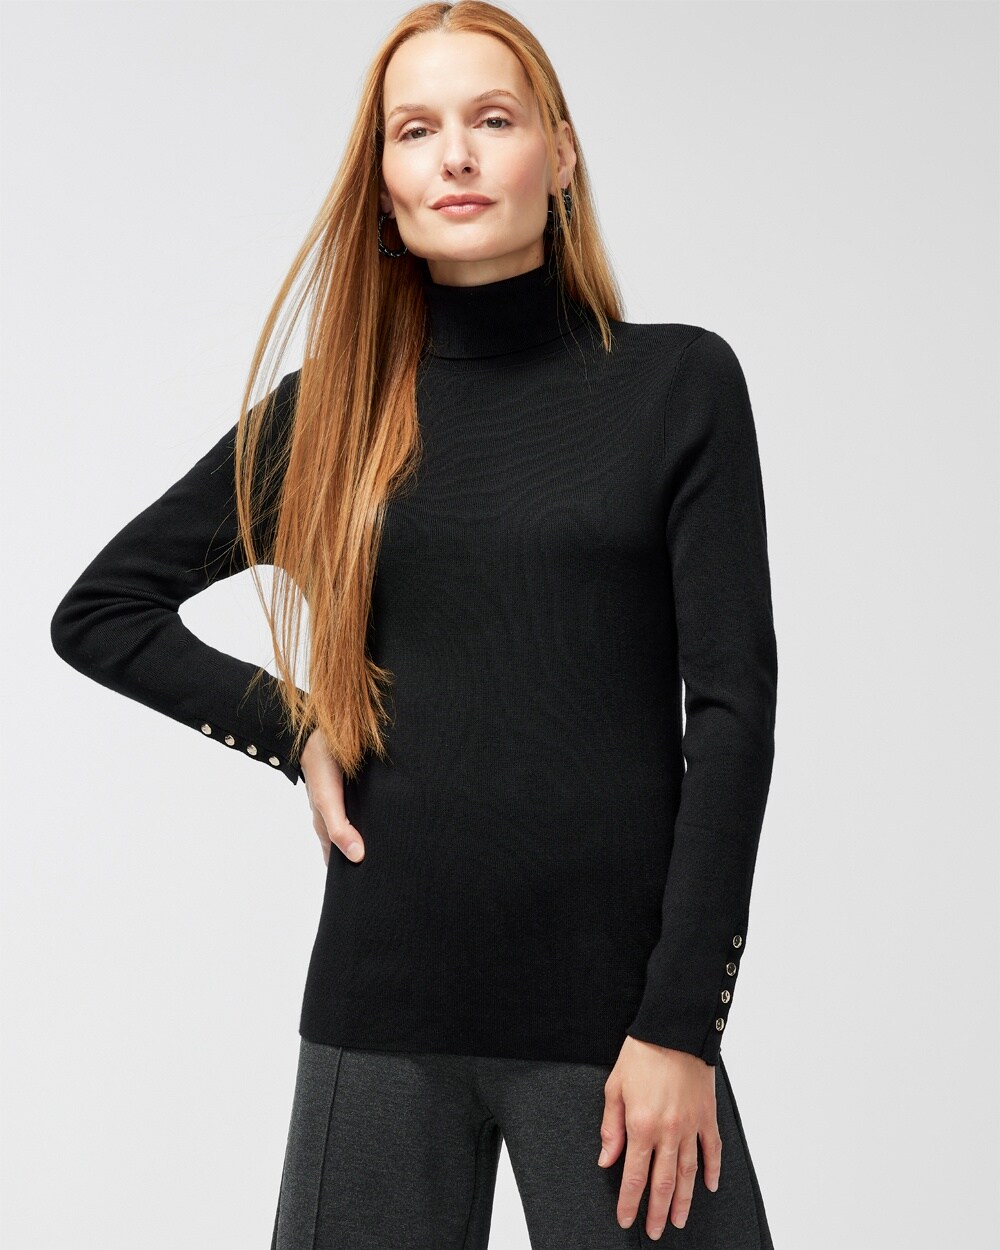 ECOVERO Turtleneck Sweater